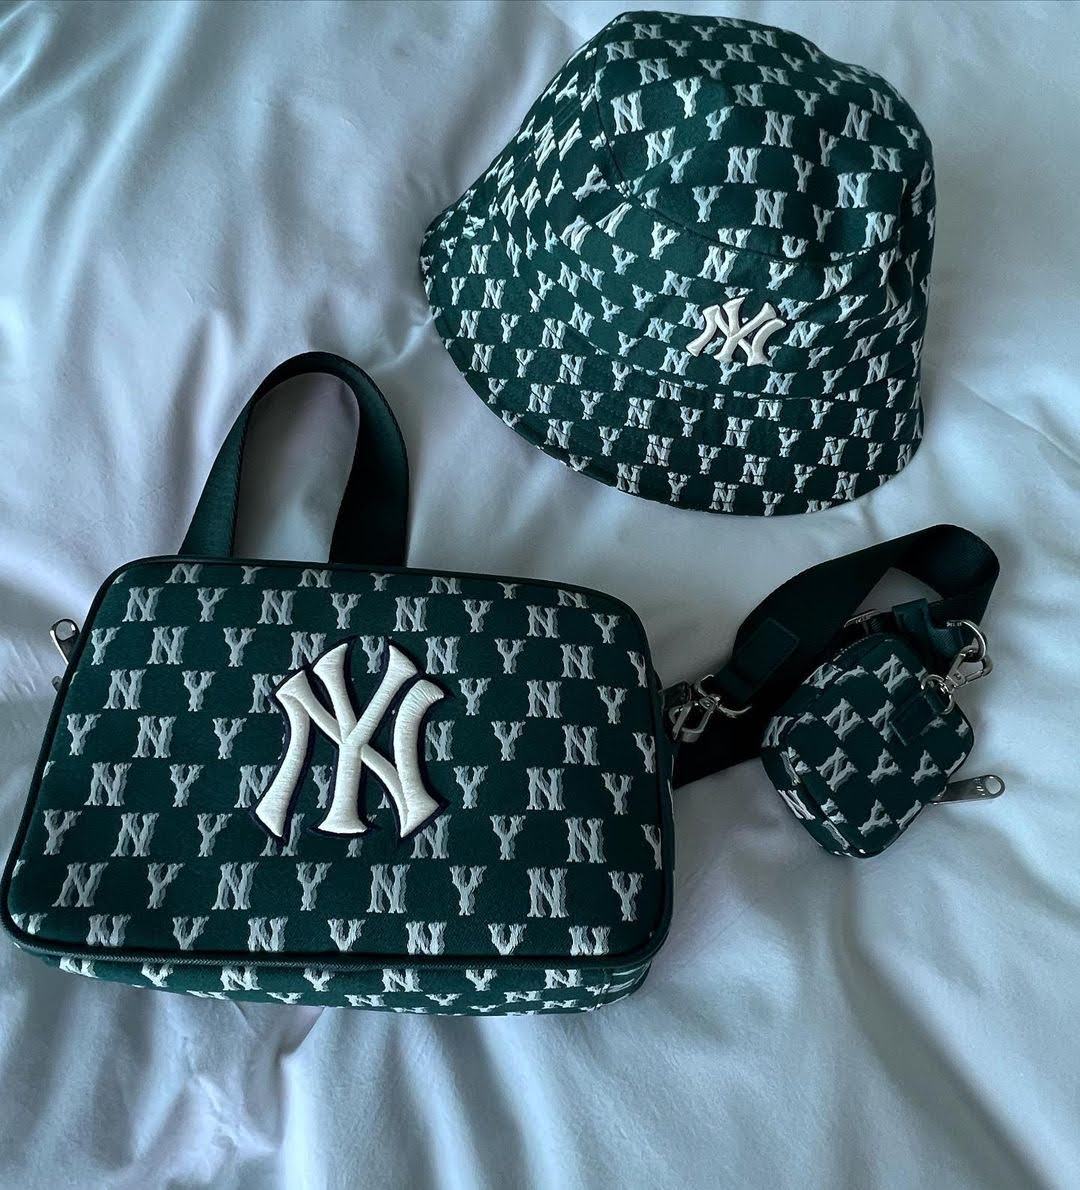 Túi đeo chéo MLB NY Classic Monogram Jacquard Cross Bag New York Yankees  D.Green